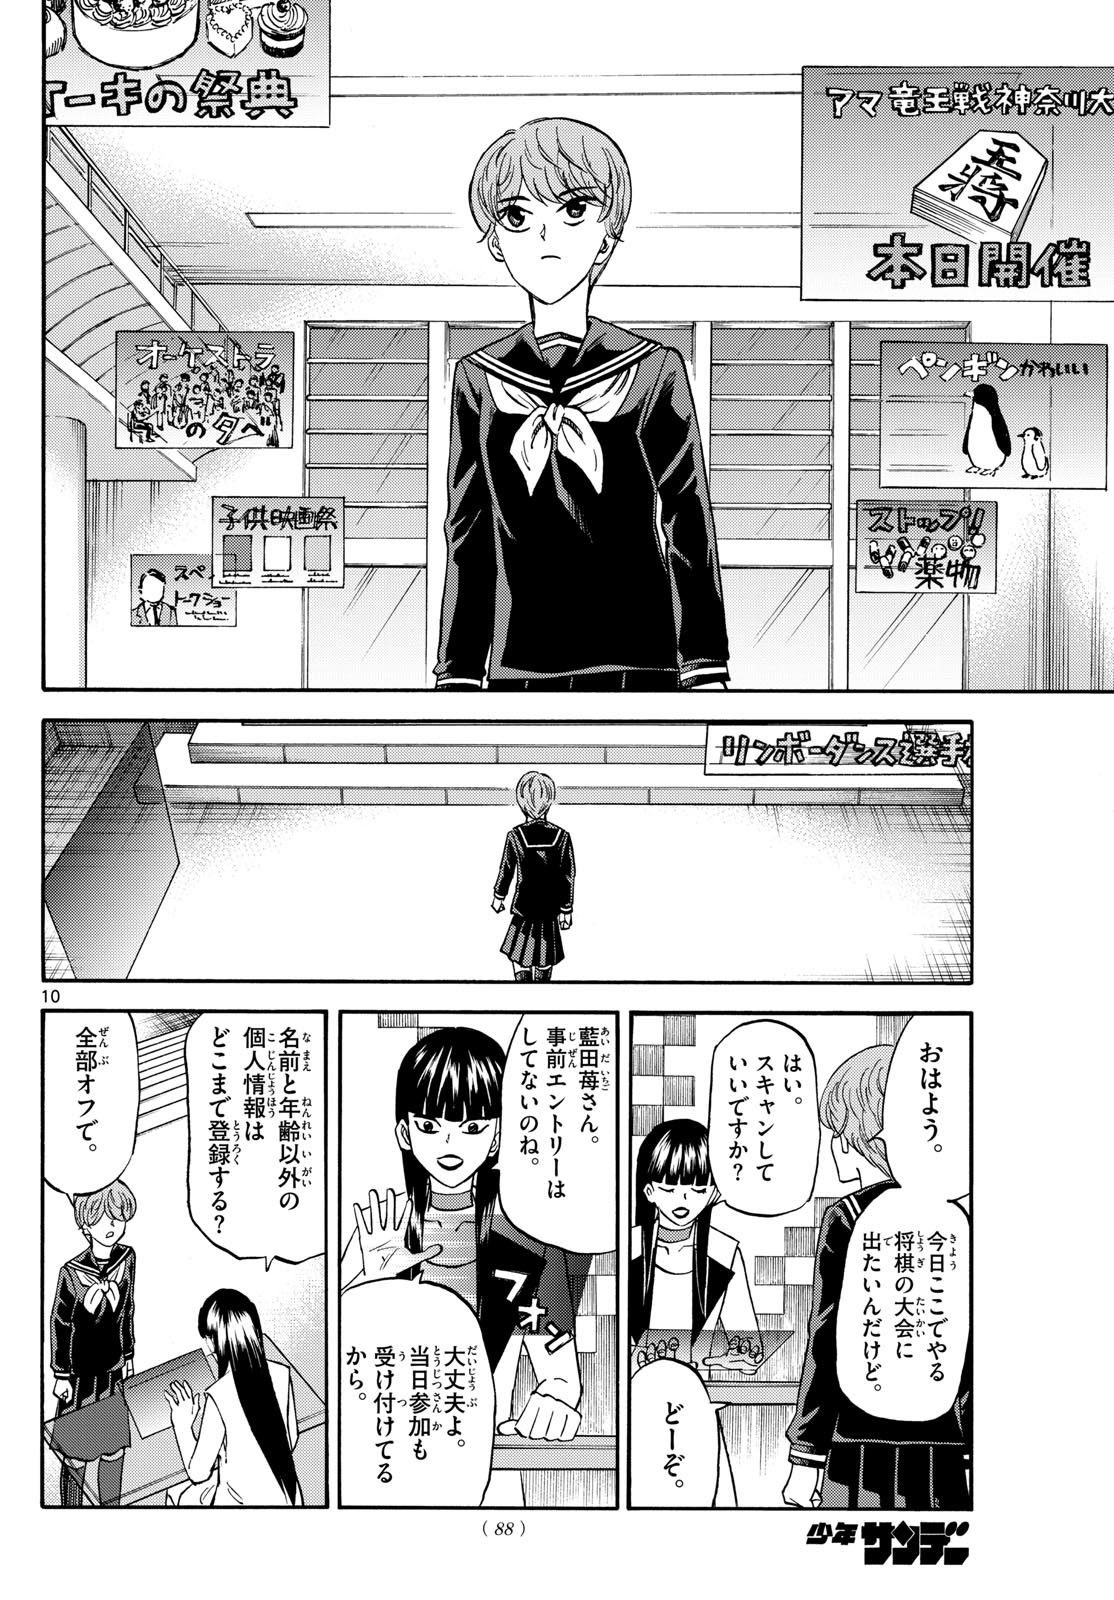 Tatsu to Ichigo - Chapter 185 - Page 10